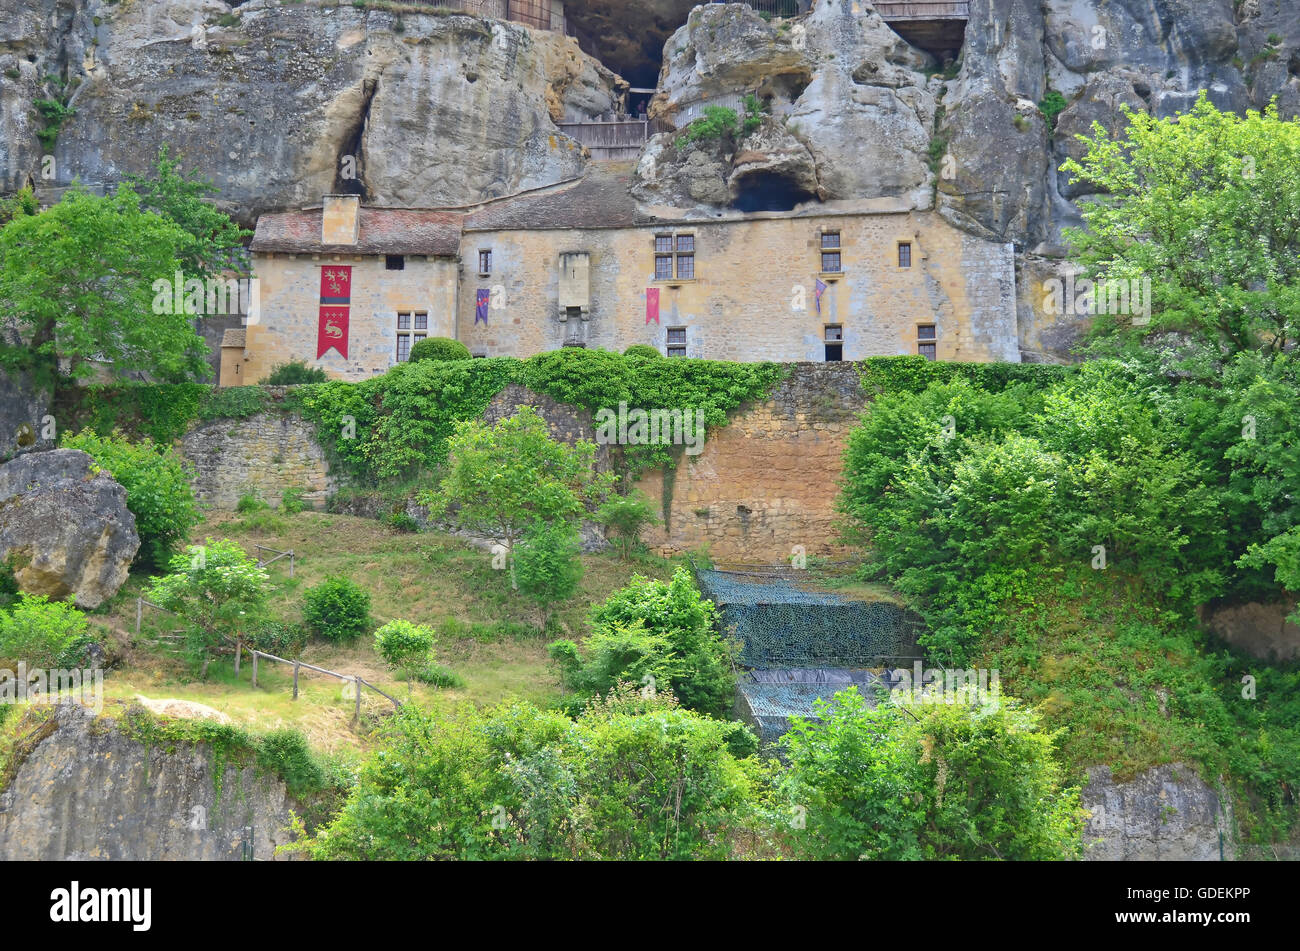 Eine befestigte Höhle Haus, besetzt von der Urzeit, in Höhlen in einer Felswand gebaut. Liegt in der Perigord Region Frankreichs Stockfoto